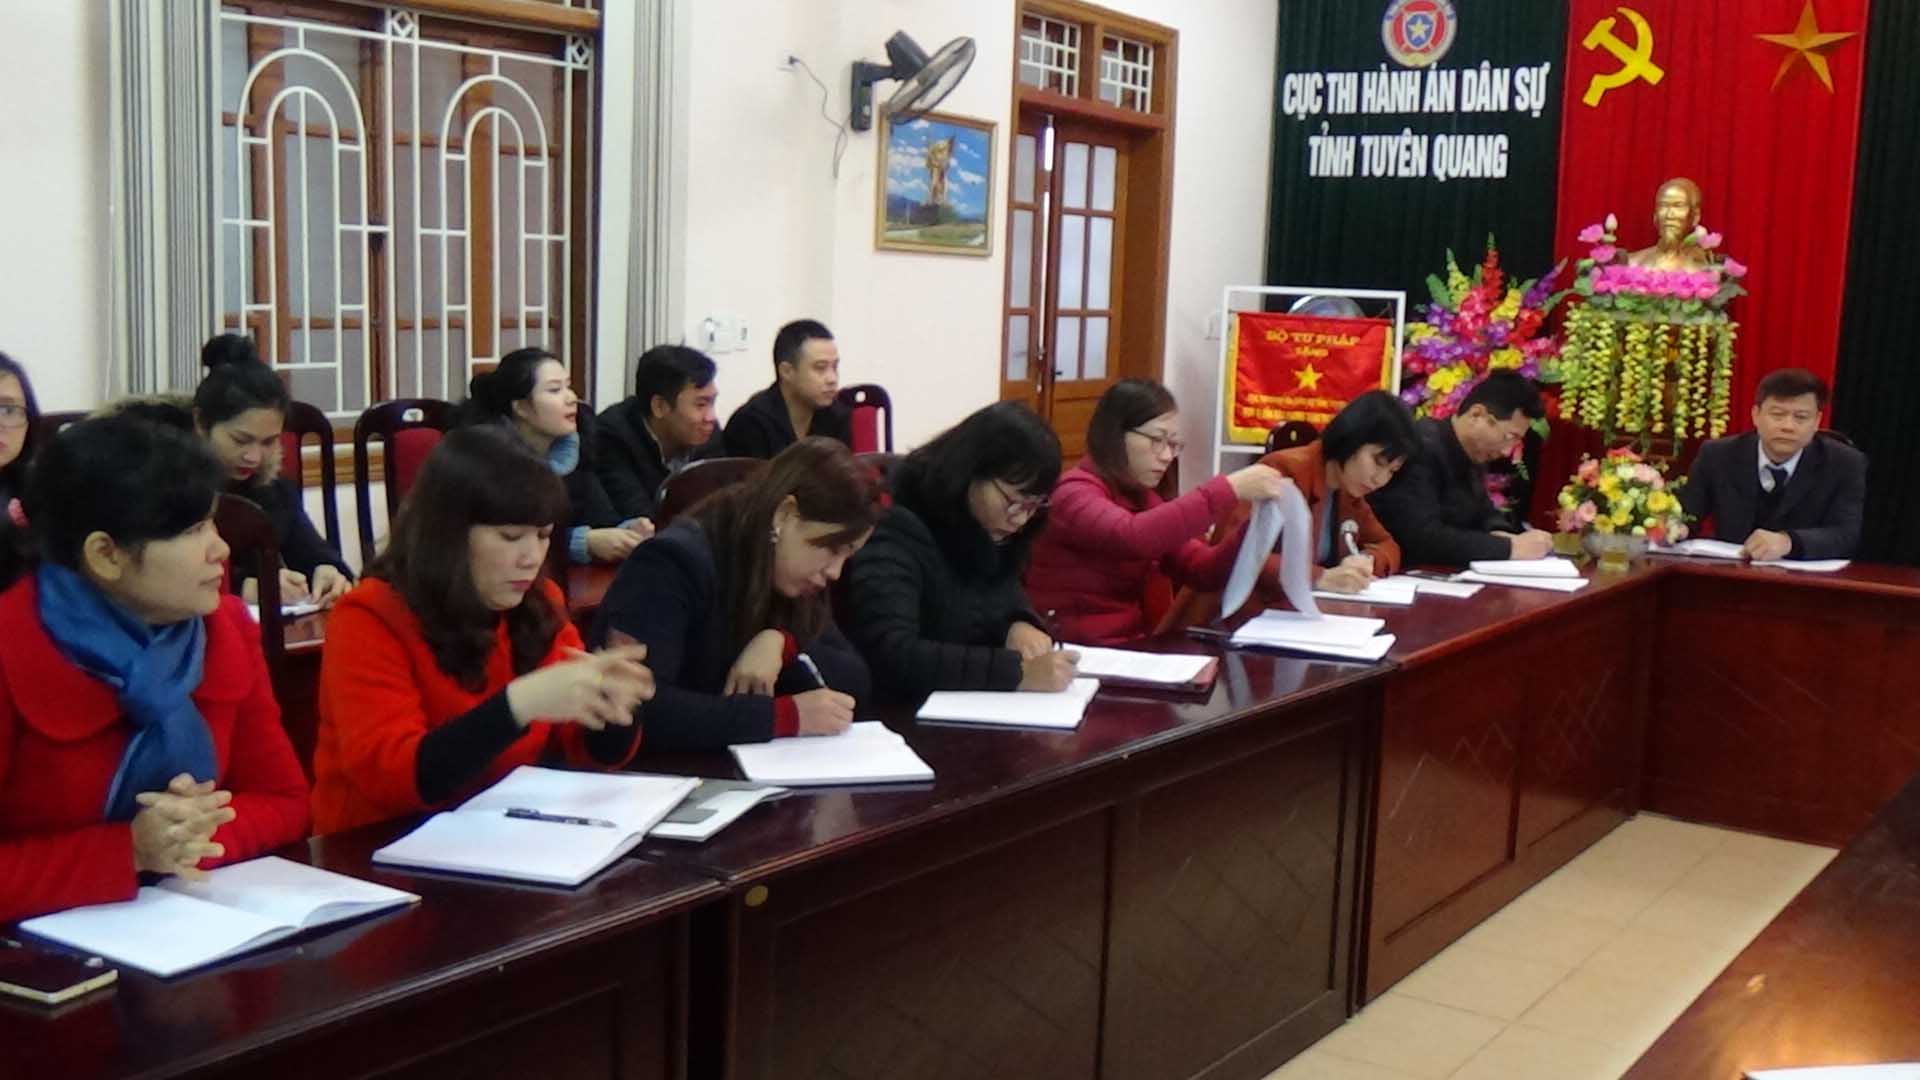 Cục Thi hành án dân sự tỉnh Tuyên Quang tổ chức Hội nghị cán bộ, công chức năm 2017.